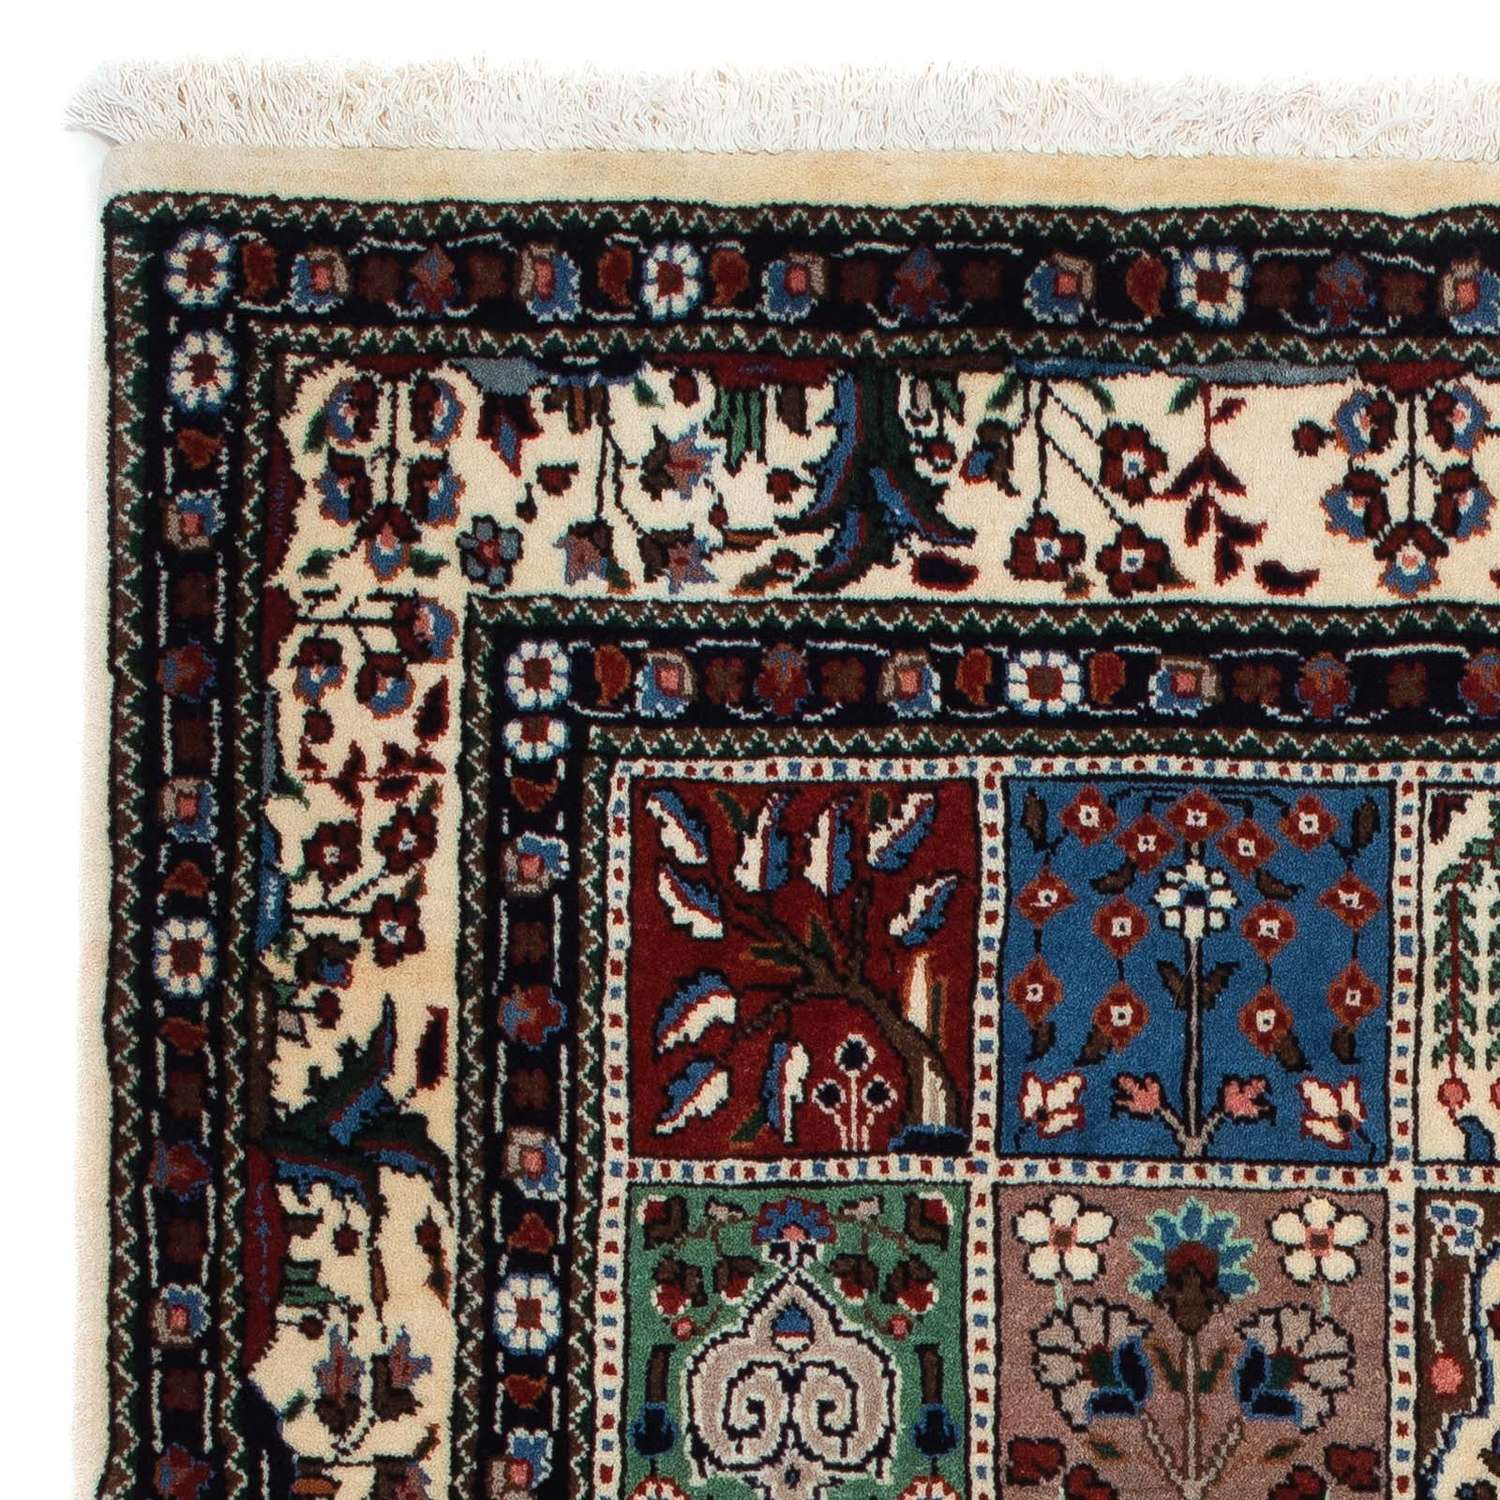 Persisk tæppe - Classic - 140 x 96 cm - flerfarvet